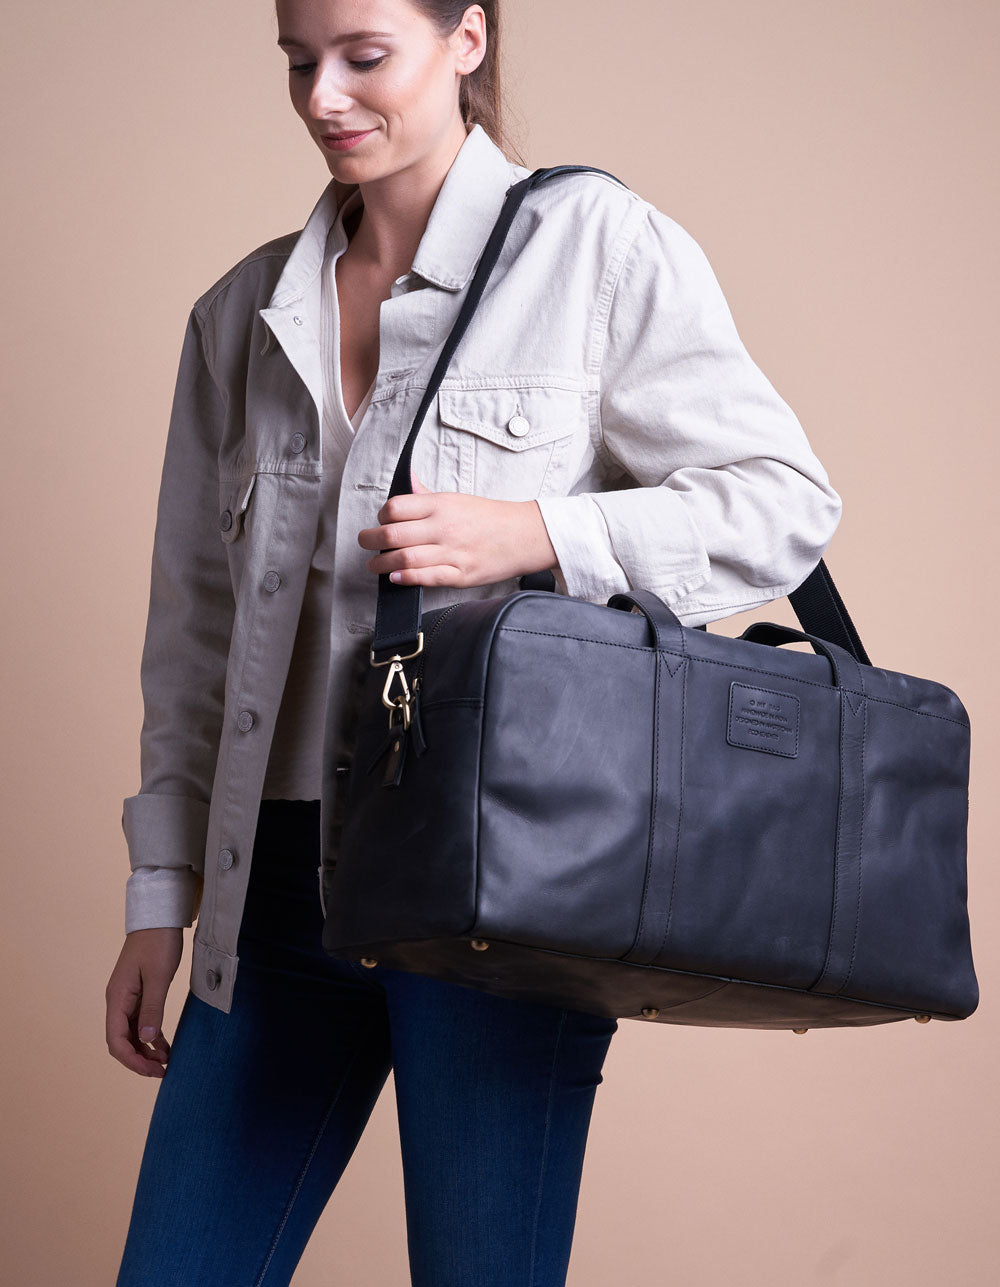 Otis Weekender Black Hunter Leather. Large travel bag for men. Model image.